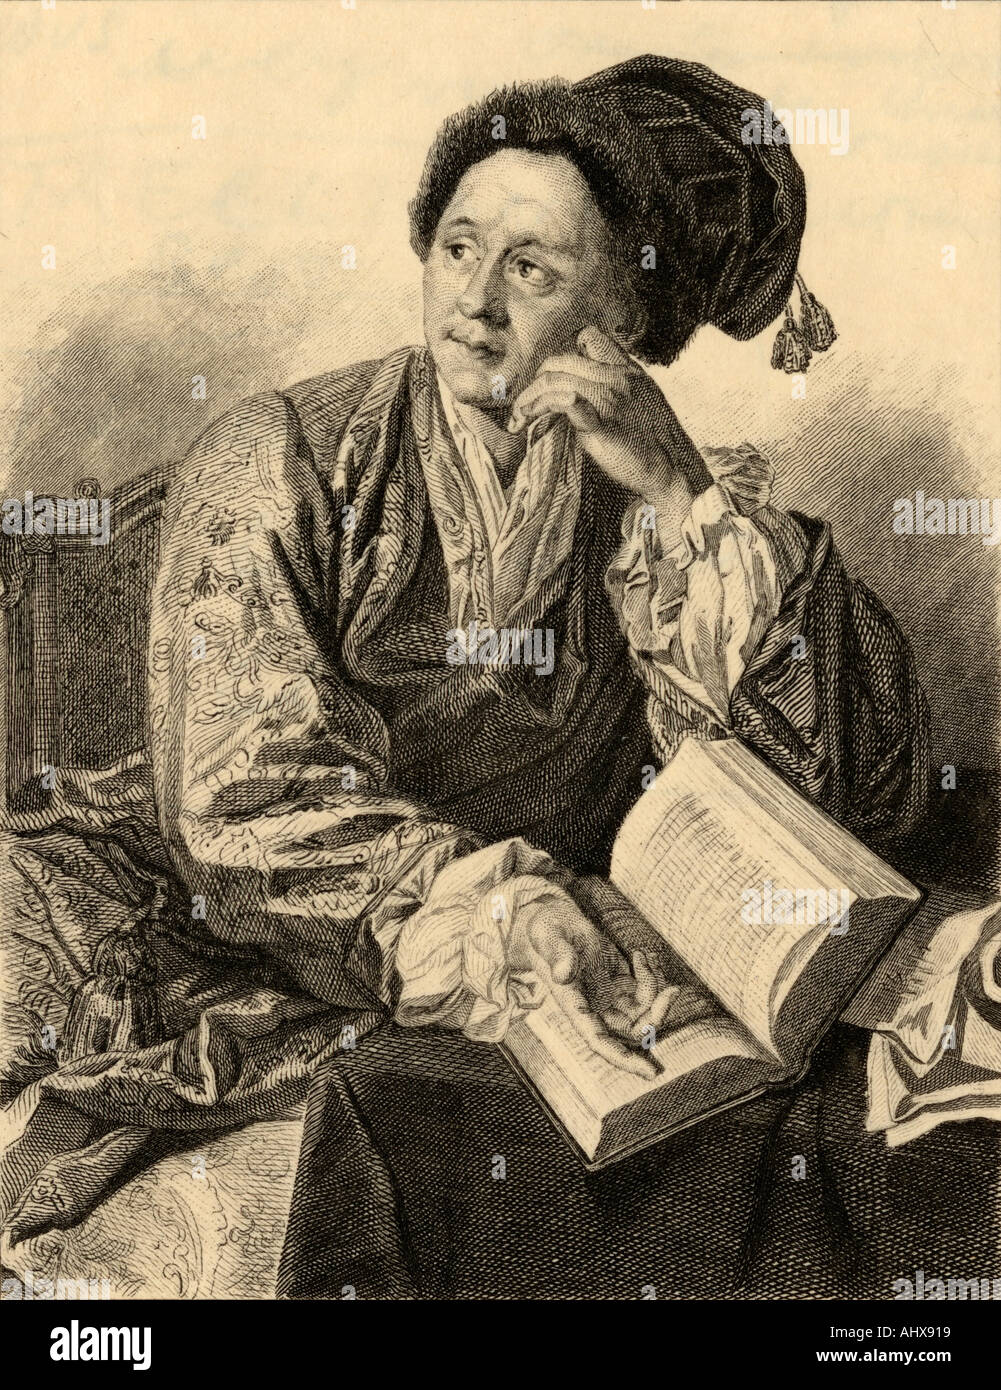 Bernard le Bovier de Fontenelle, aka Bernard Le Bouyer de Fontenelle,  1657 - 1757.  French poet and philosopher. Stock Photo